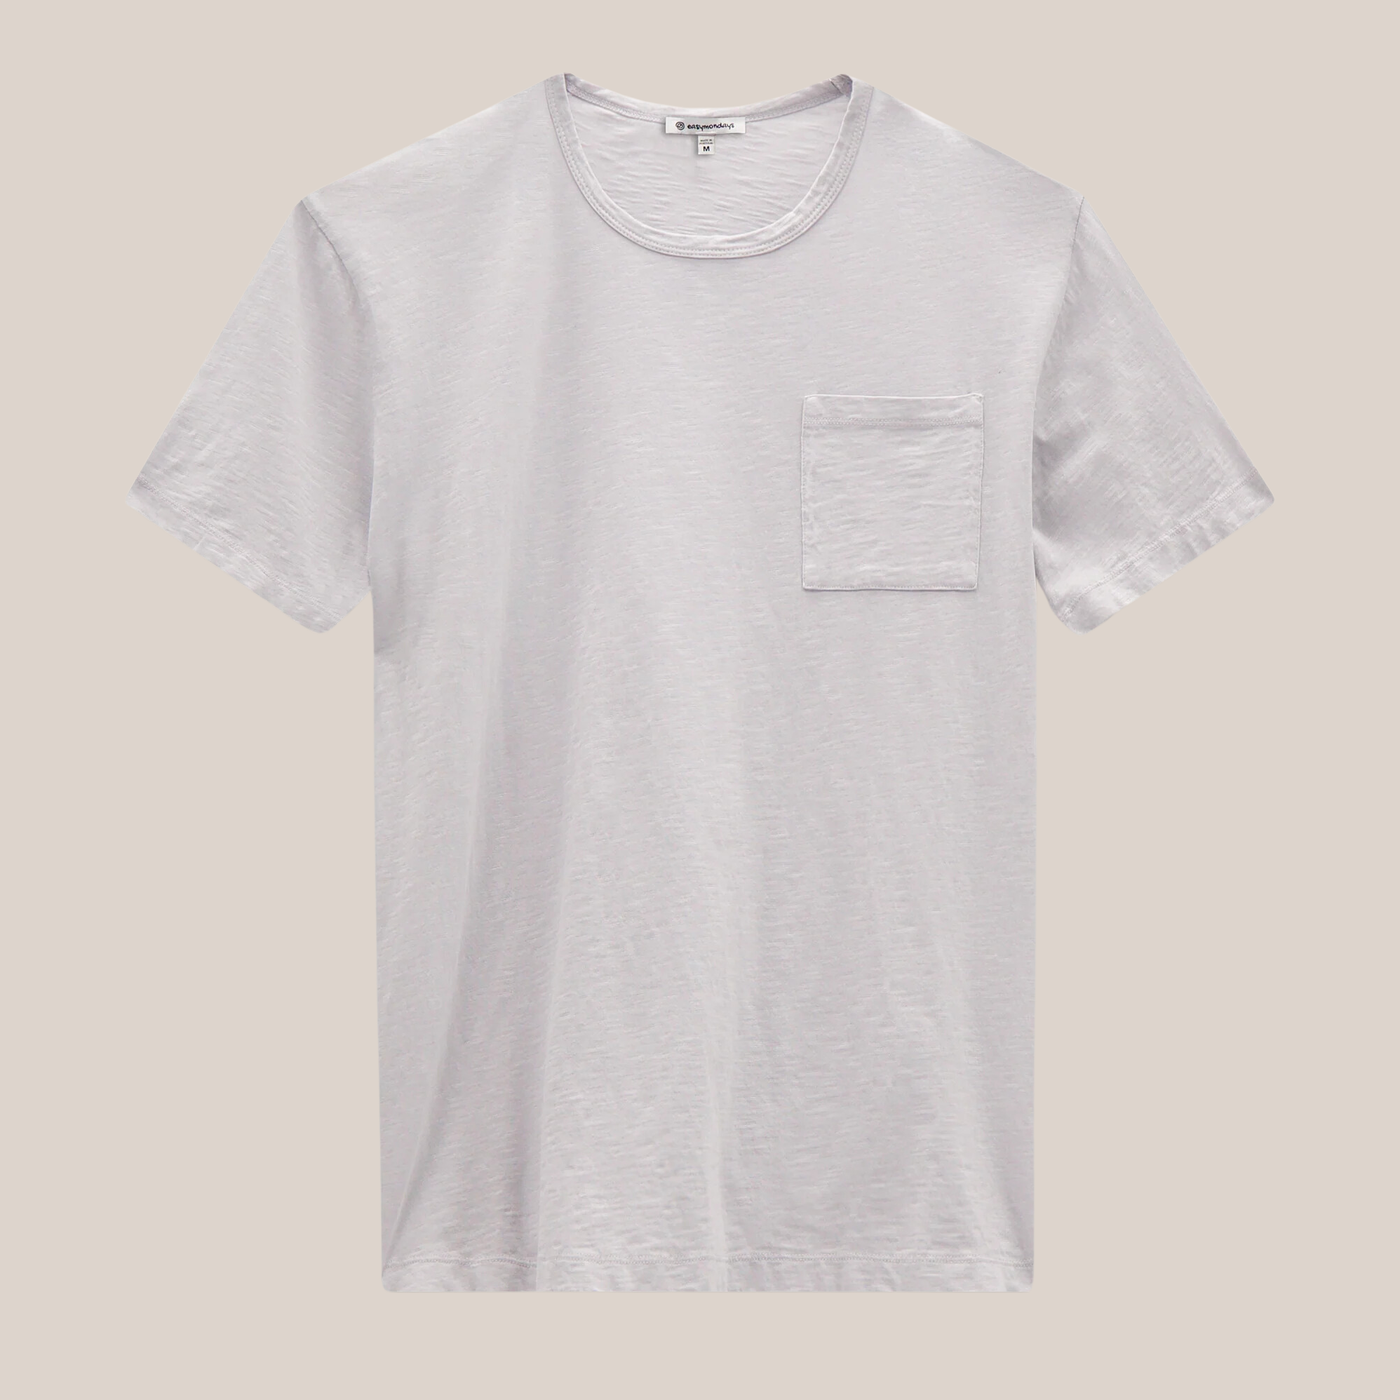 Gotstyle Fashion - Easy Mondays T-Shirts Crew Neck Slub Pocket Tee - Off-White